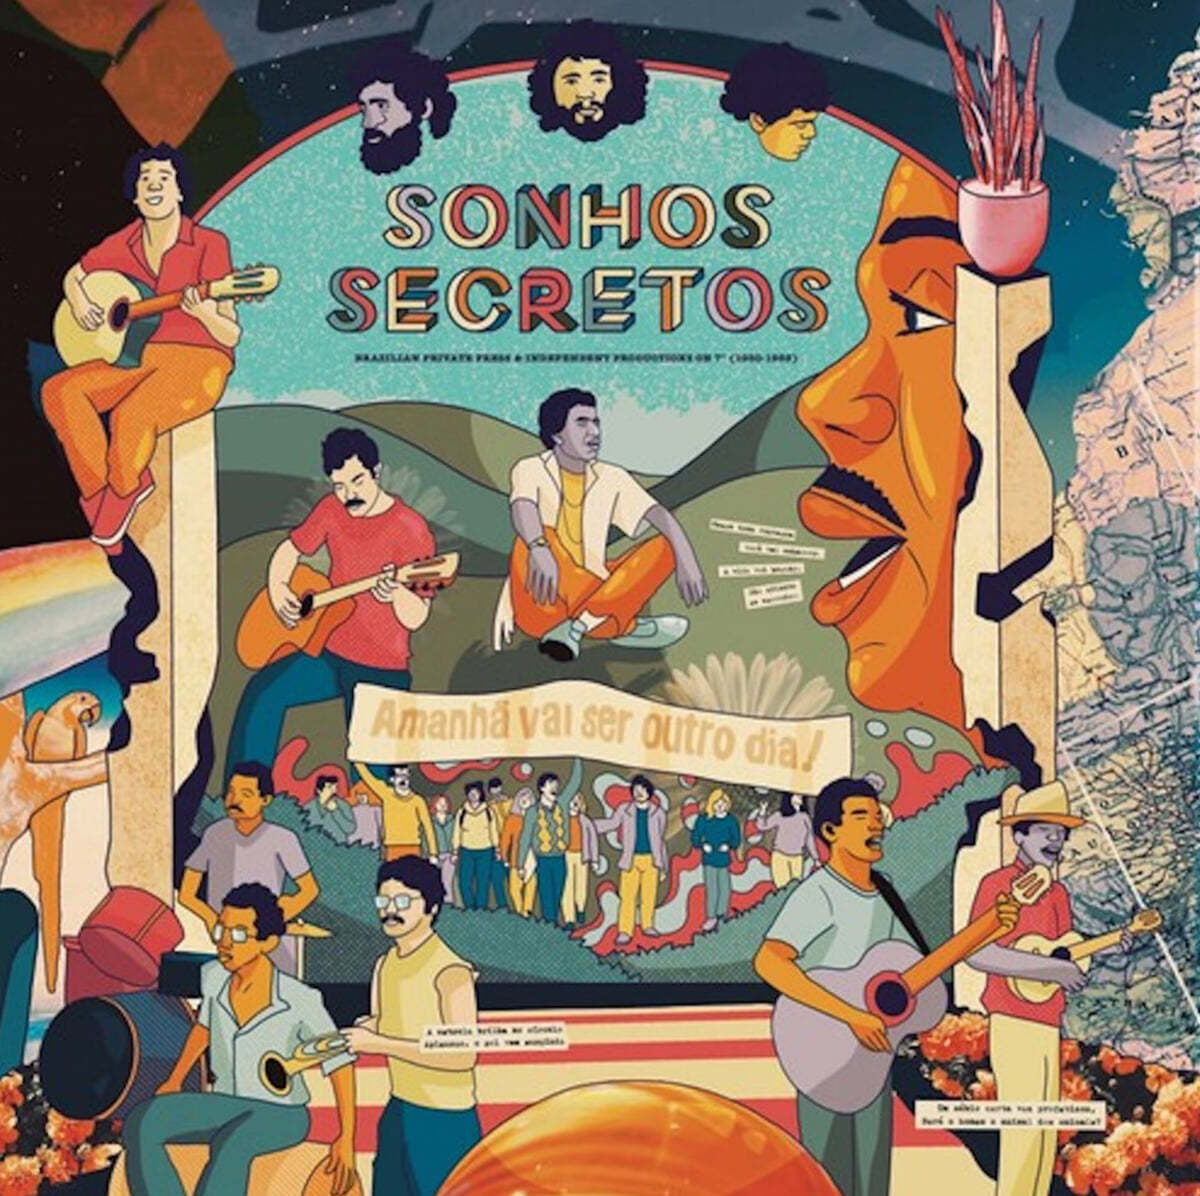 손호스 세크레토스 컬렉션 (Sonhos Secretos) [LP]